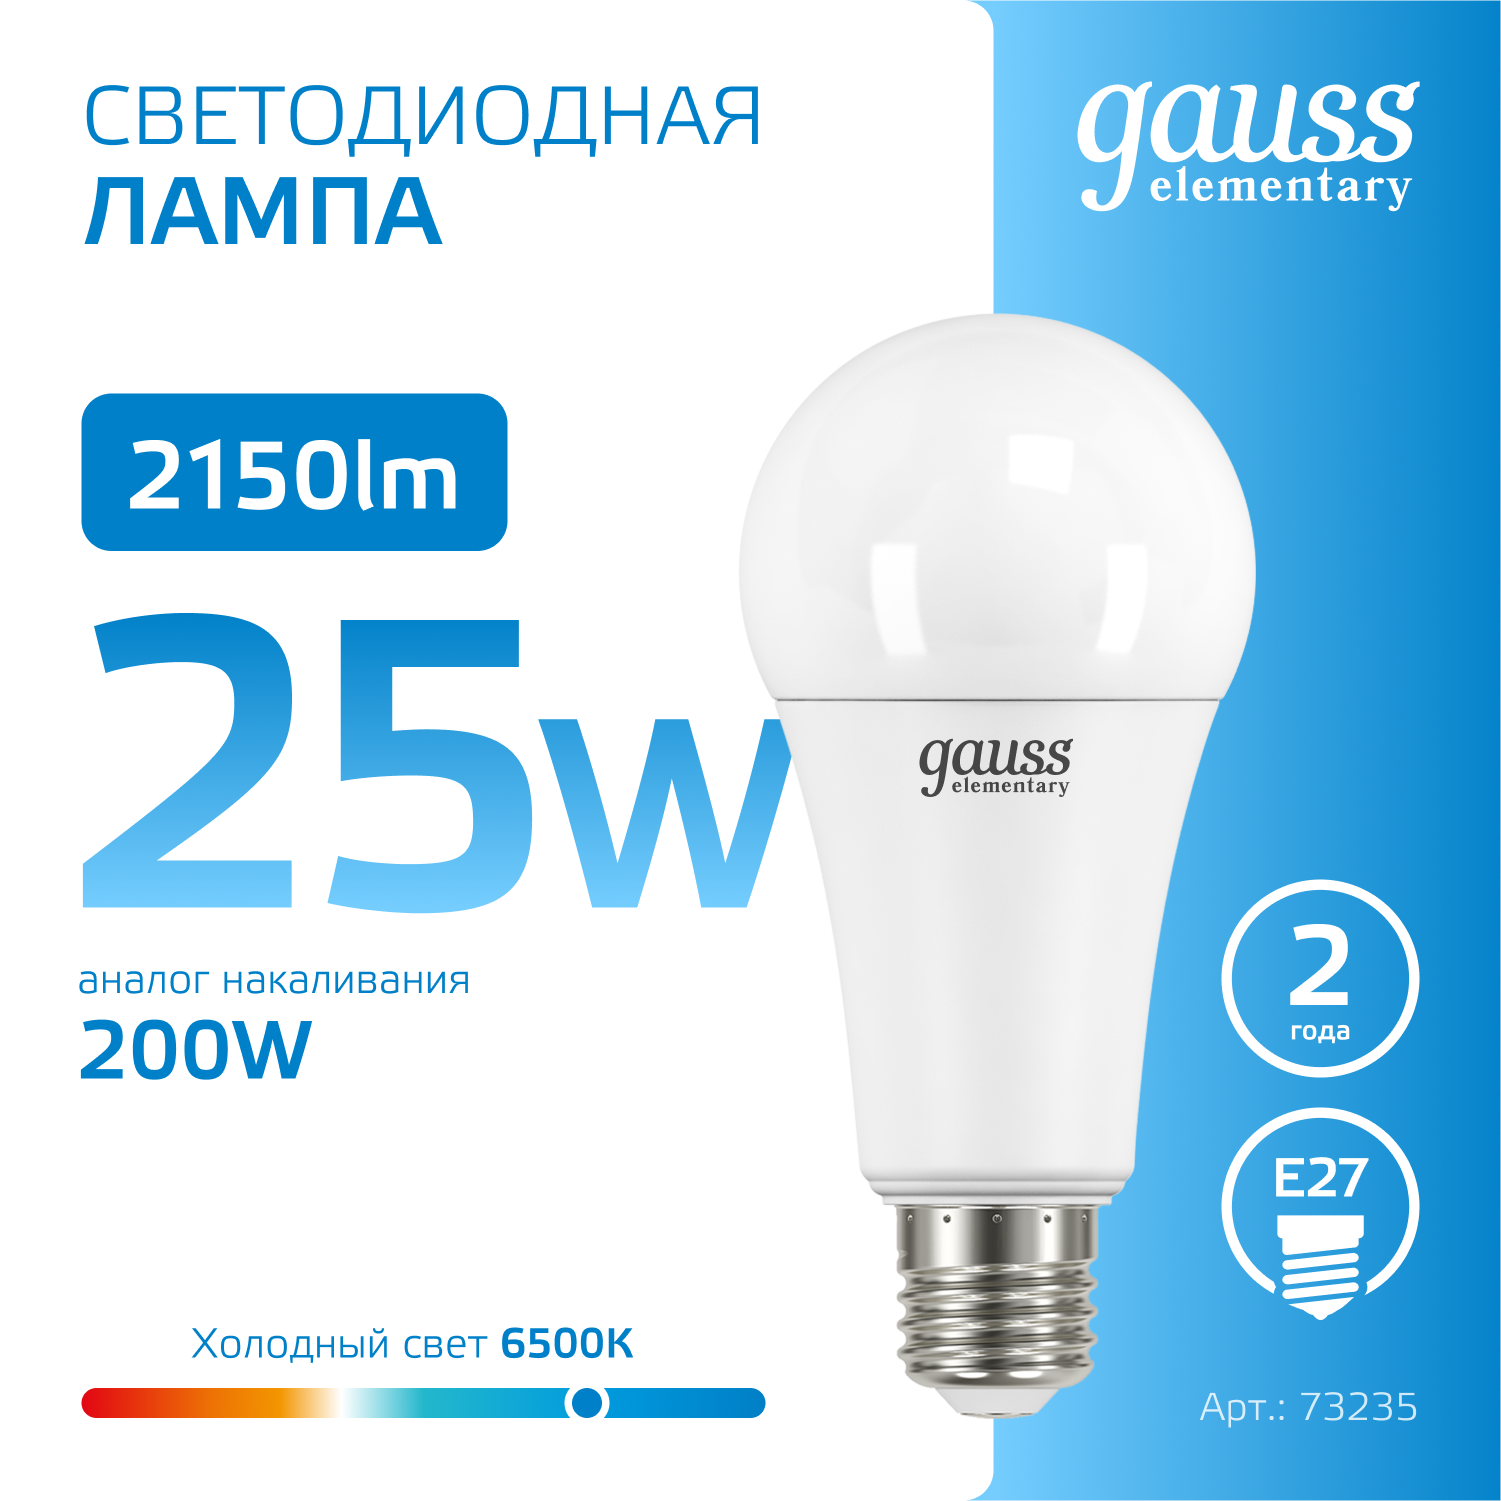 Лампочка светодиодная E27 Груша 25W холодный свет 6500K упаковка 10 шт. Gauss Elementary